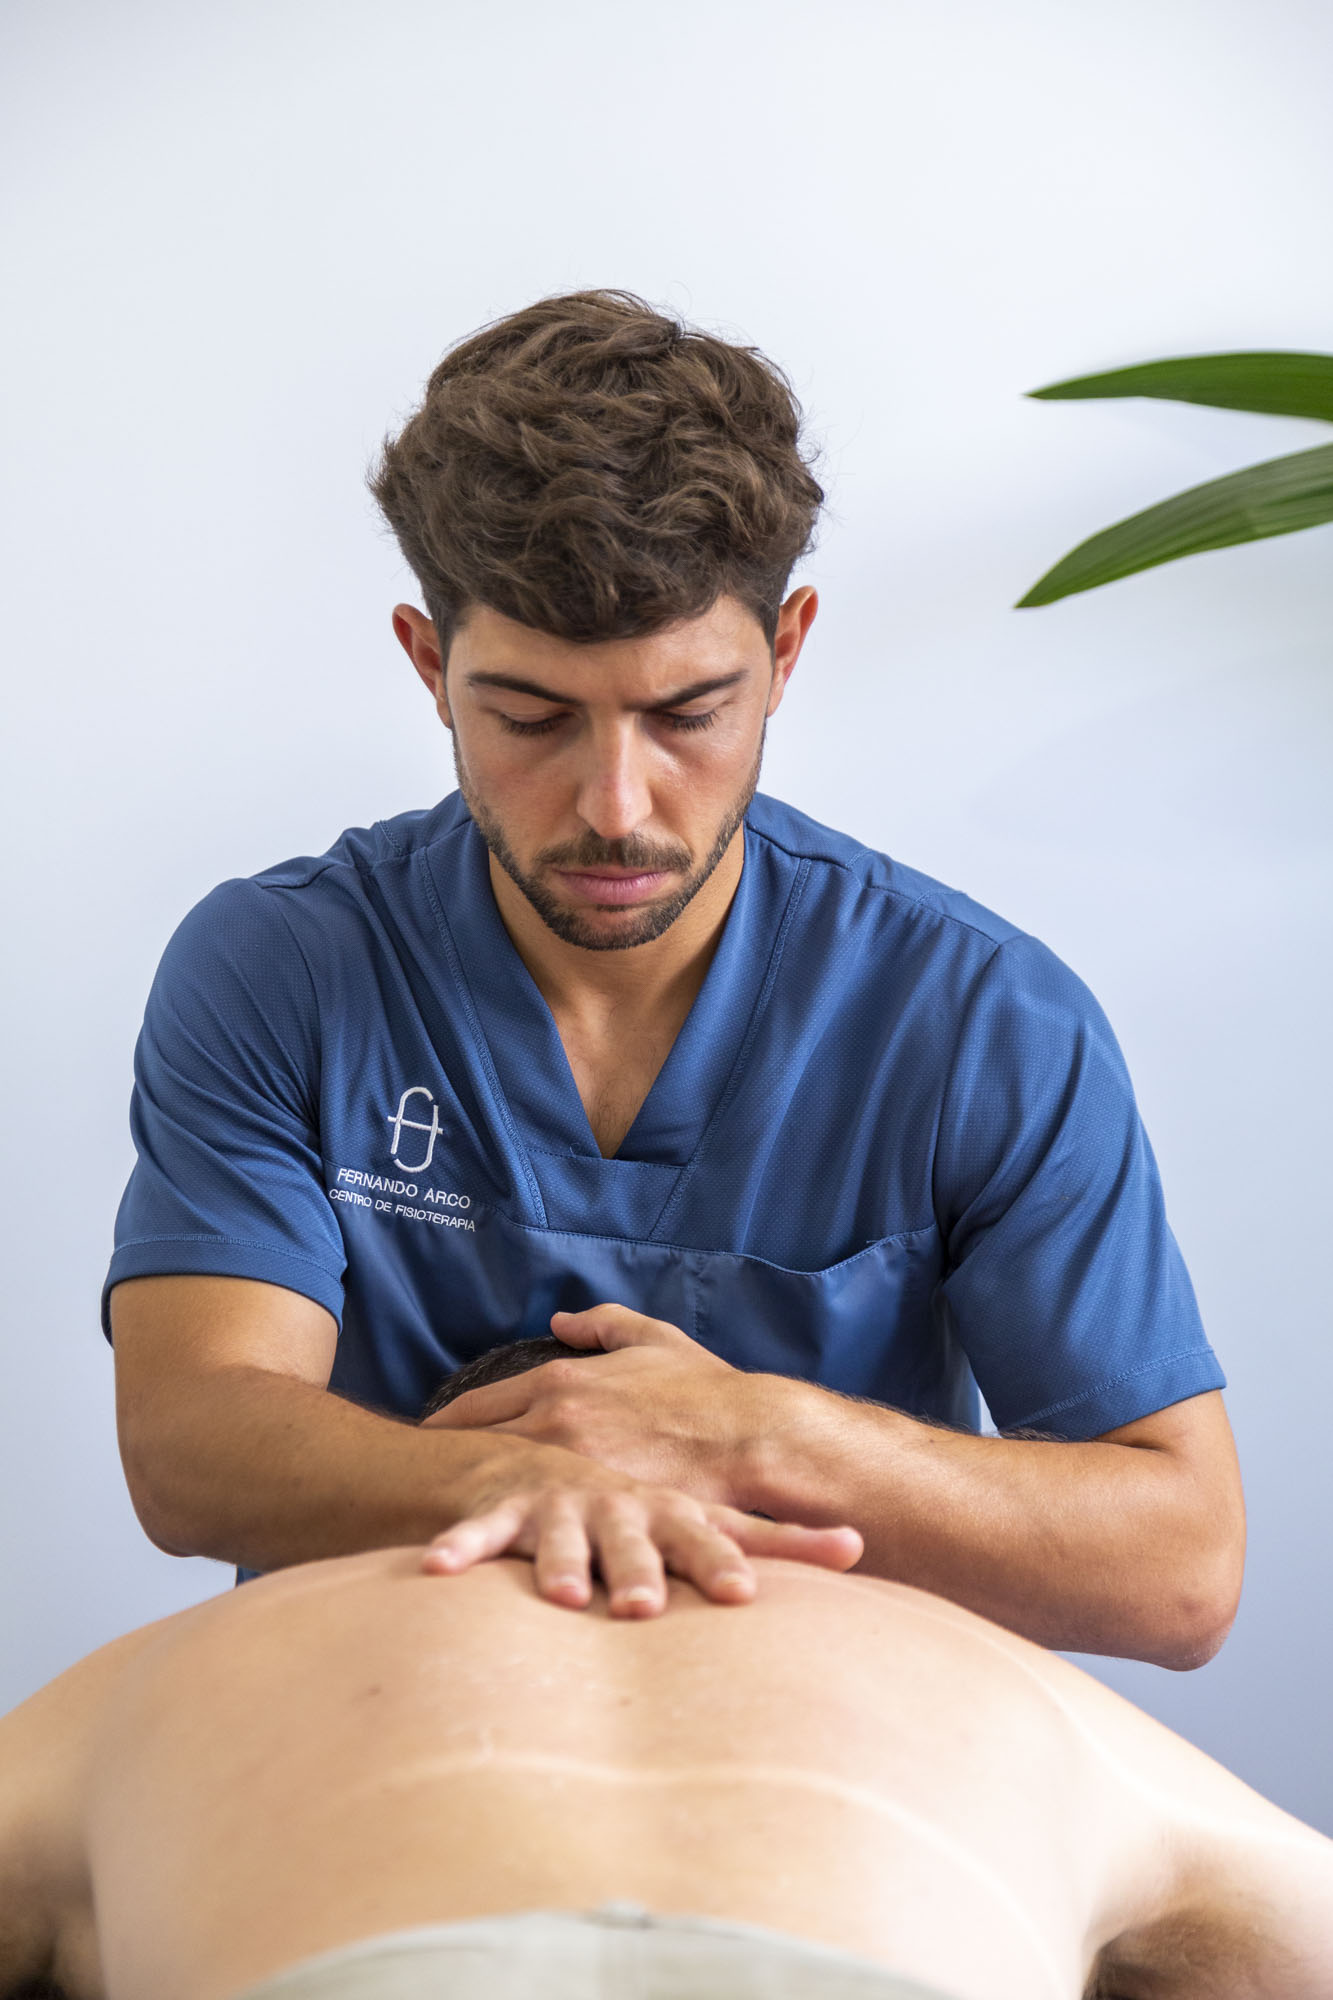 Fisioterapeuta Fernando Arco realizando un trabajo de masaje abdominal a un paciente tumbado en la camilla en Centro de fisioterapia almeria Fernando Arco